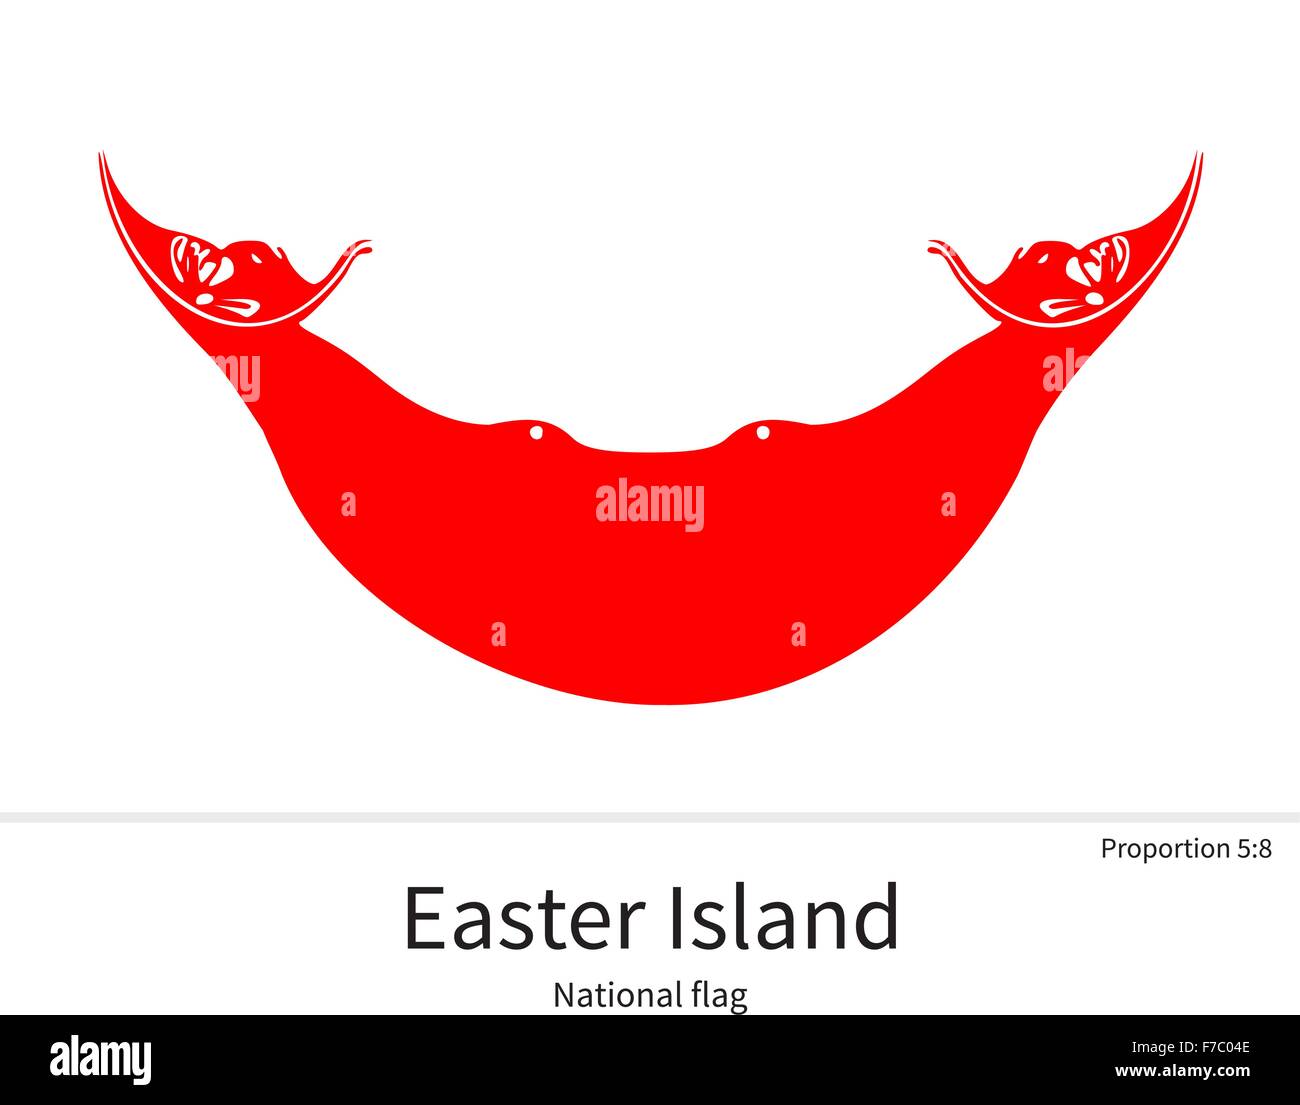 Drapeau national de l'île de Pâques avec les bonnes proportions, couleurs, éléments Illustration de Vecteur